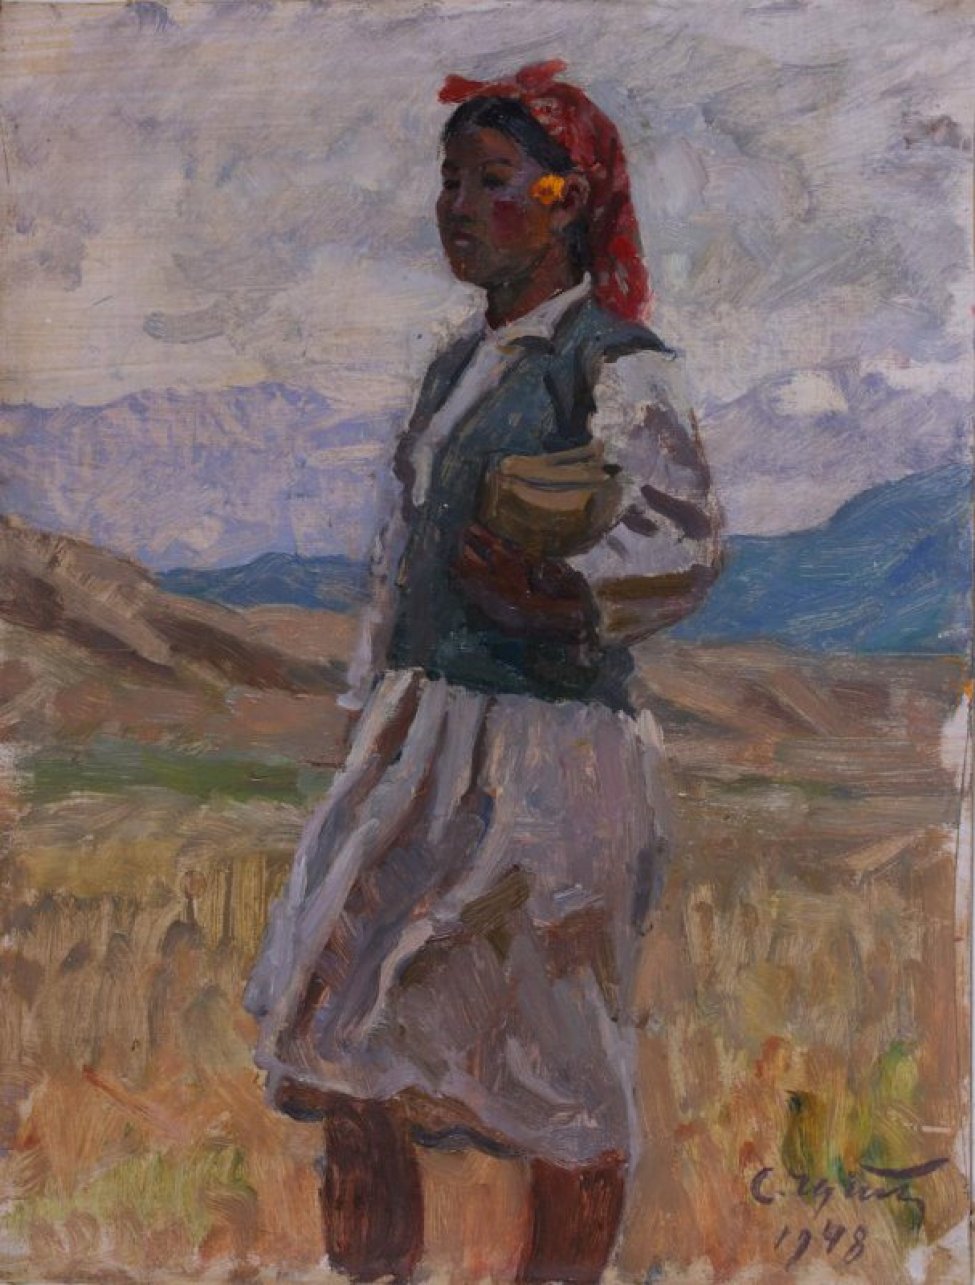 На переднем плане изображена девочка в светло-сером платье, синей безрукавке и красном платке. Левой рукой, согнутой в локте, она держит книгу. На фоне - желтая земля, цепи гор и серое небо.